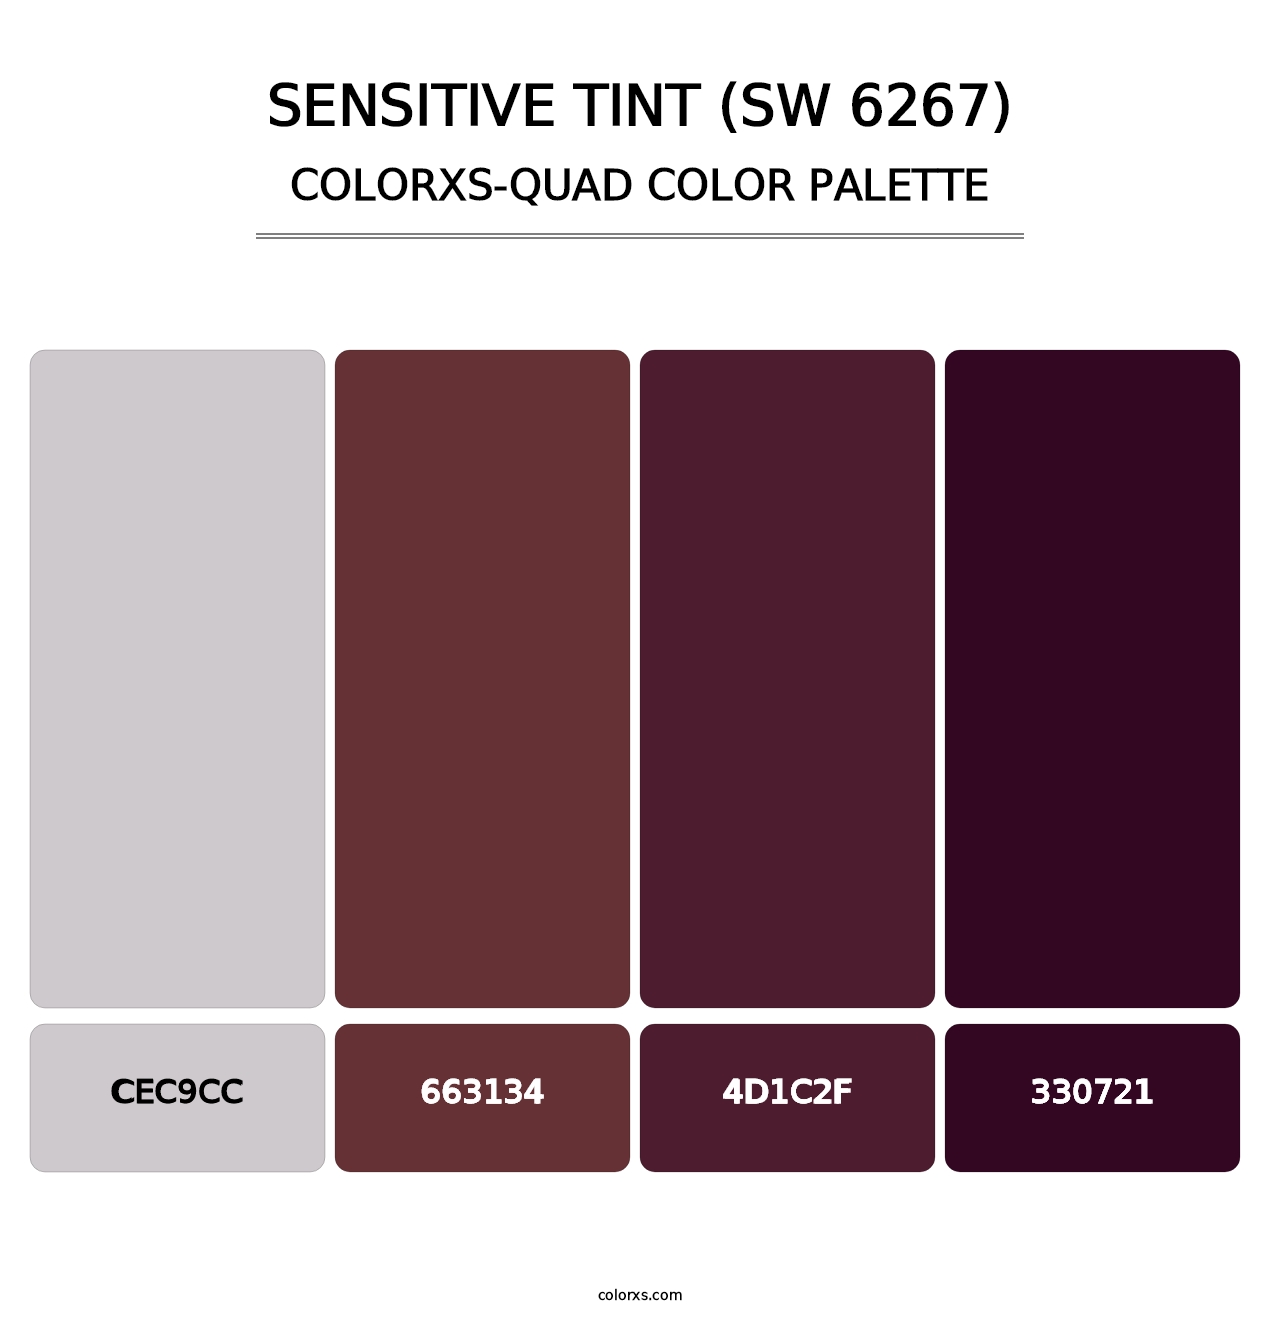 Sensitive Tint (SW 6267) - Colorxs Quad Palette